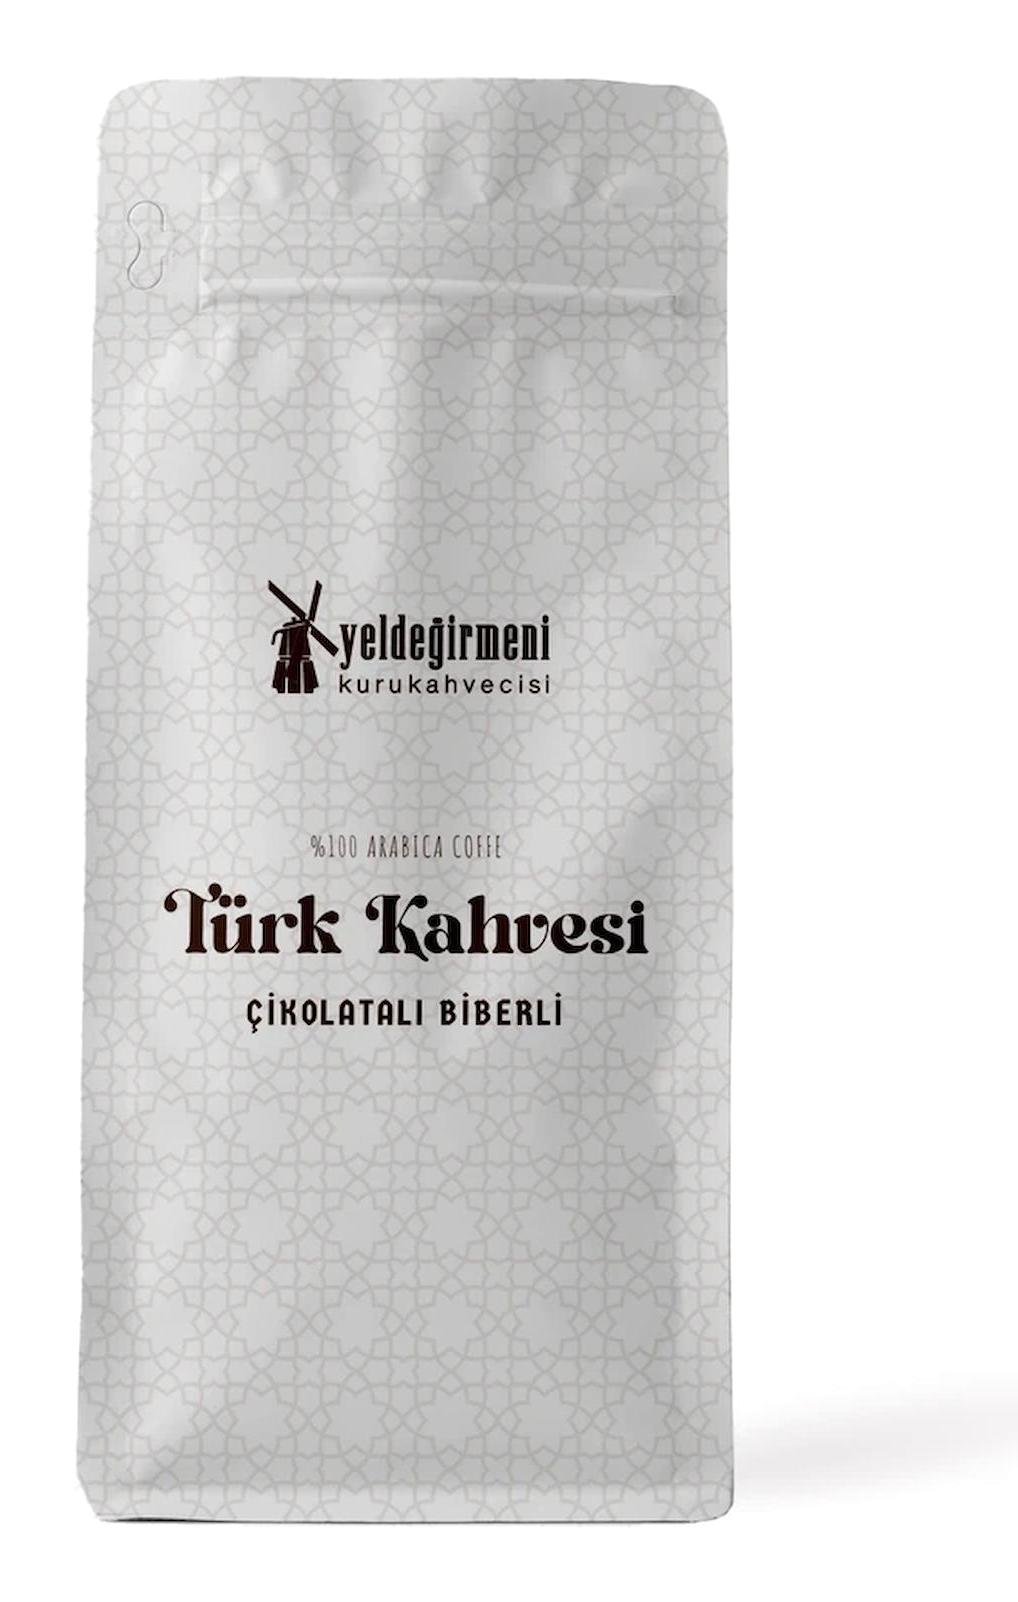 Yeldeğirmeni Kurukahvecisi Çikolatalı-Biberli Orta Kavrulmuş Türk Kahvesi 1 kg